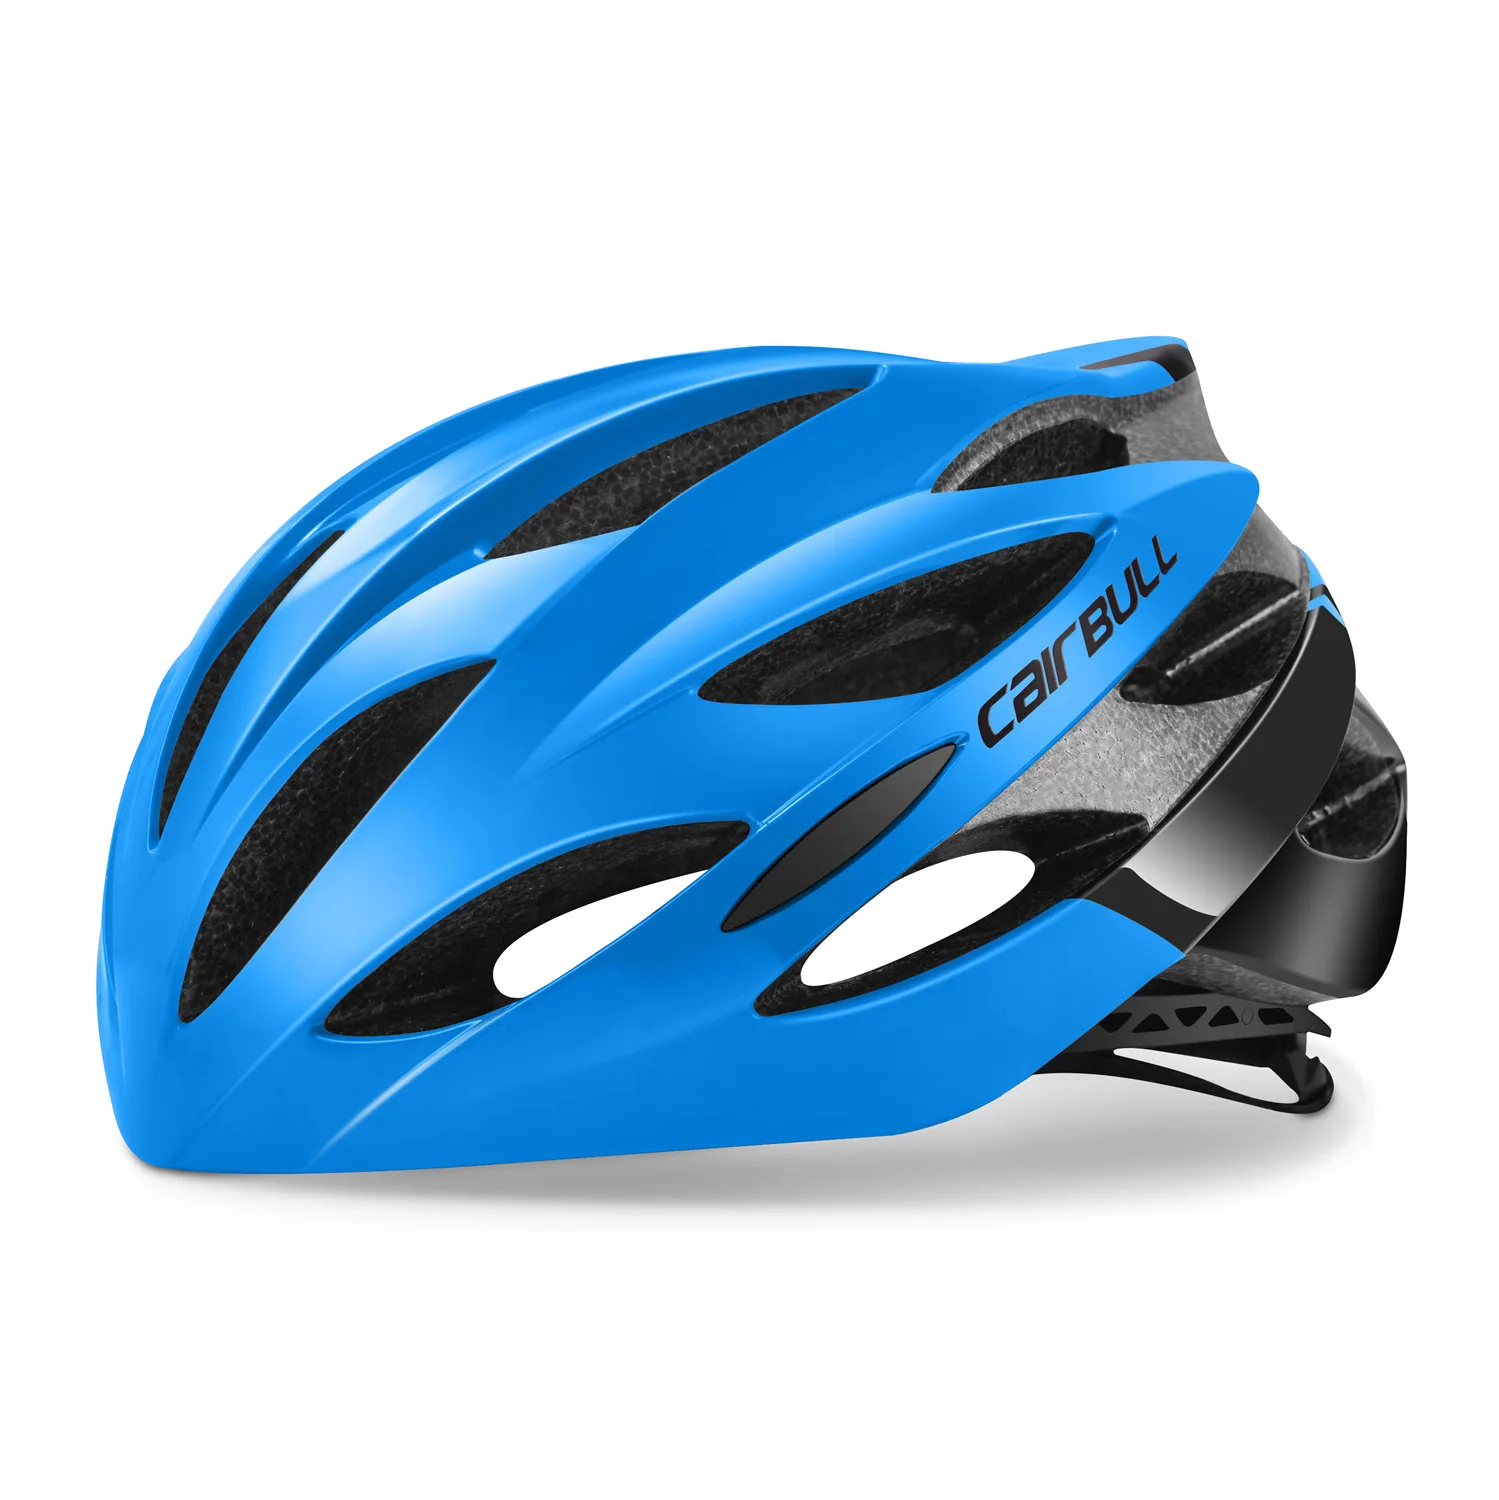 Велосипедный гоночный шлем Cairbull CB-40, ультралегкий шлем для горного велосипеда, шоссейного велосипеда, шлем для спорта на открытом воздухе, защитный шлем, Аксессуары для велосипеда